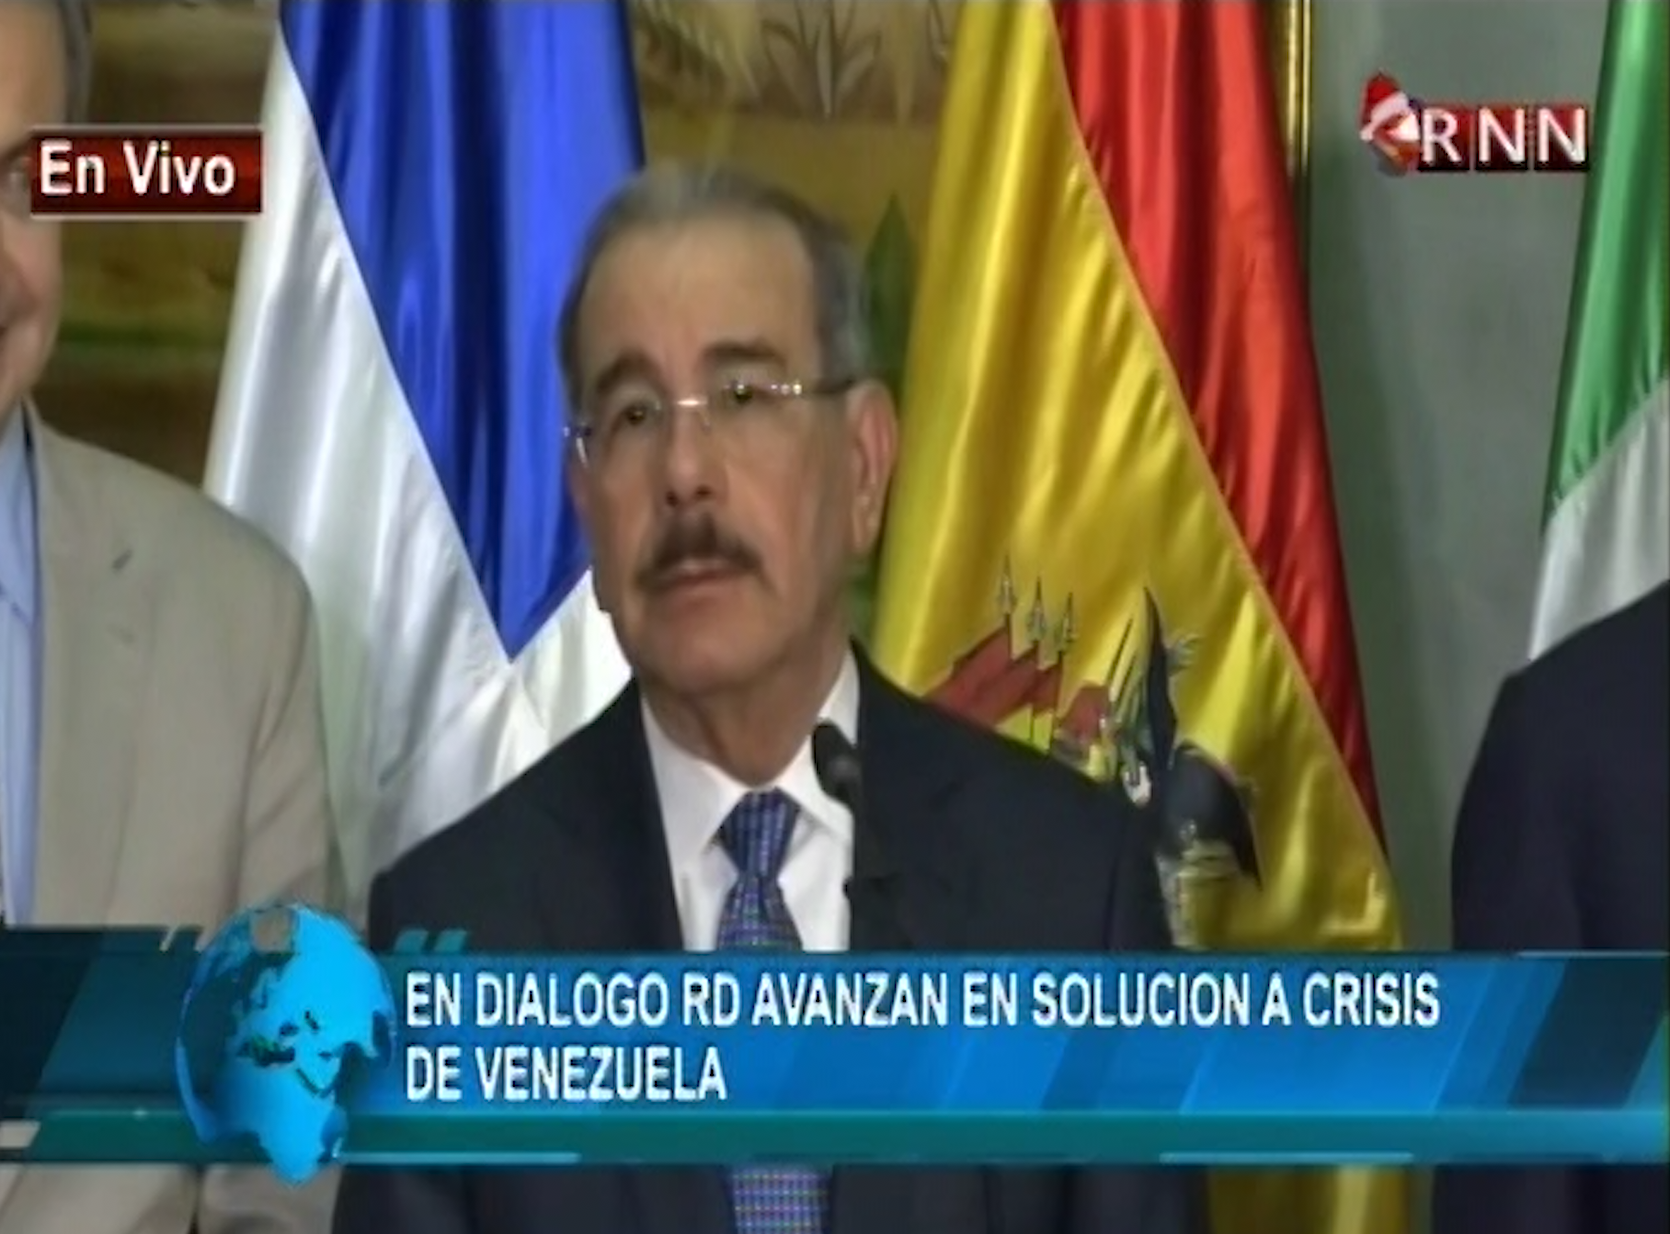 Noticias RNN: El Diálogo Avanza En Solución A Crisis En Venezuela